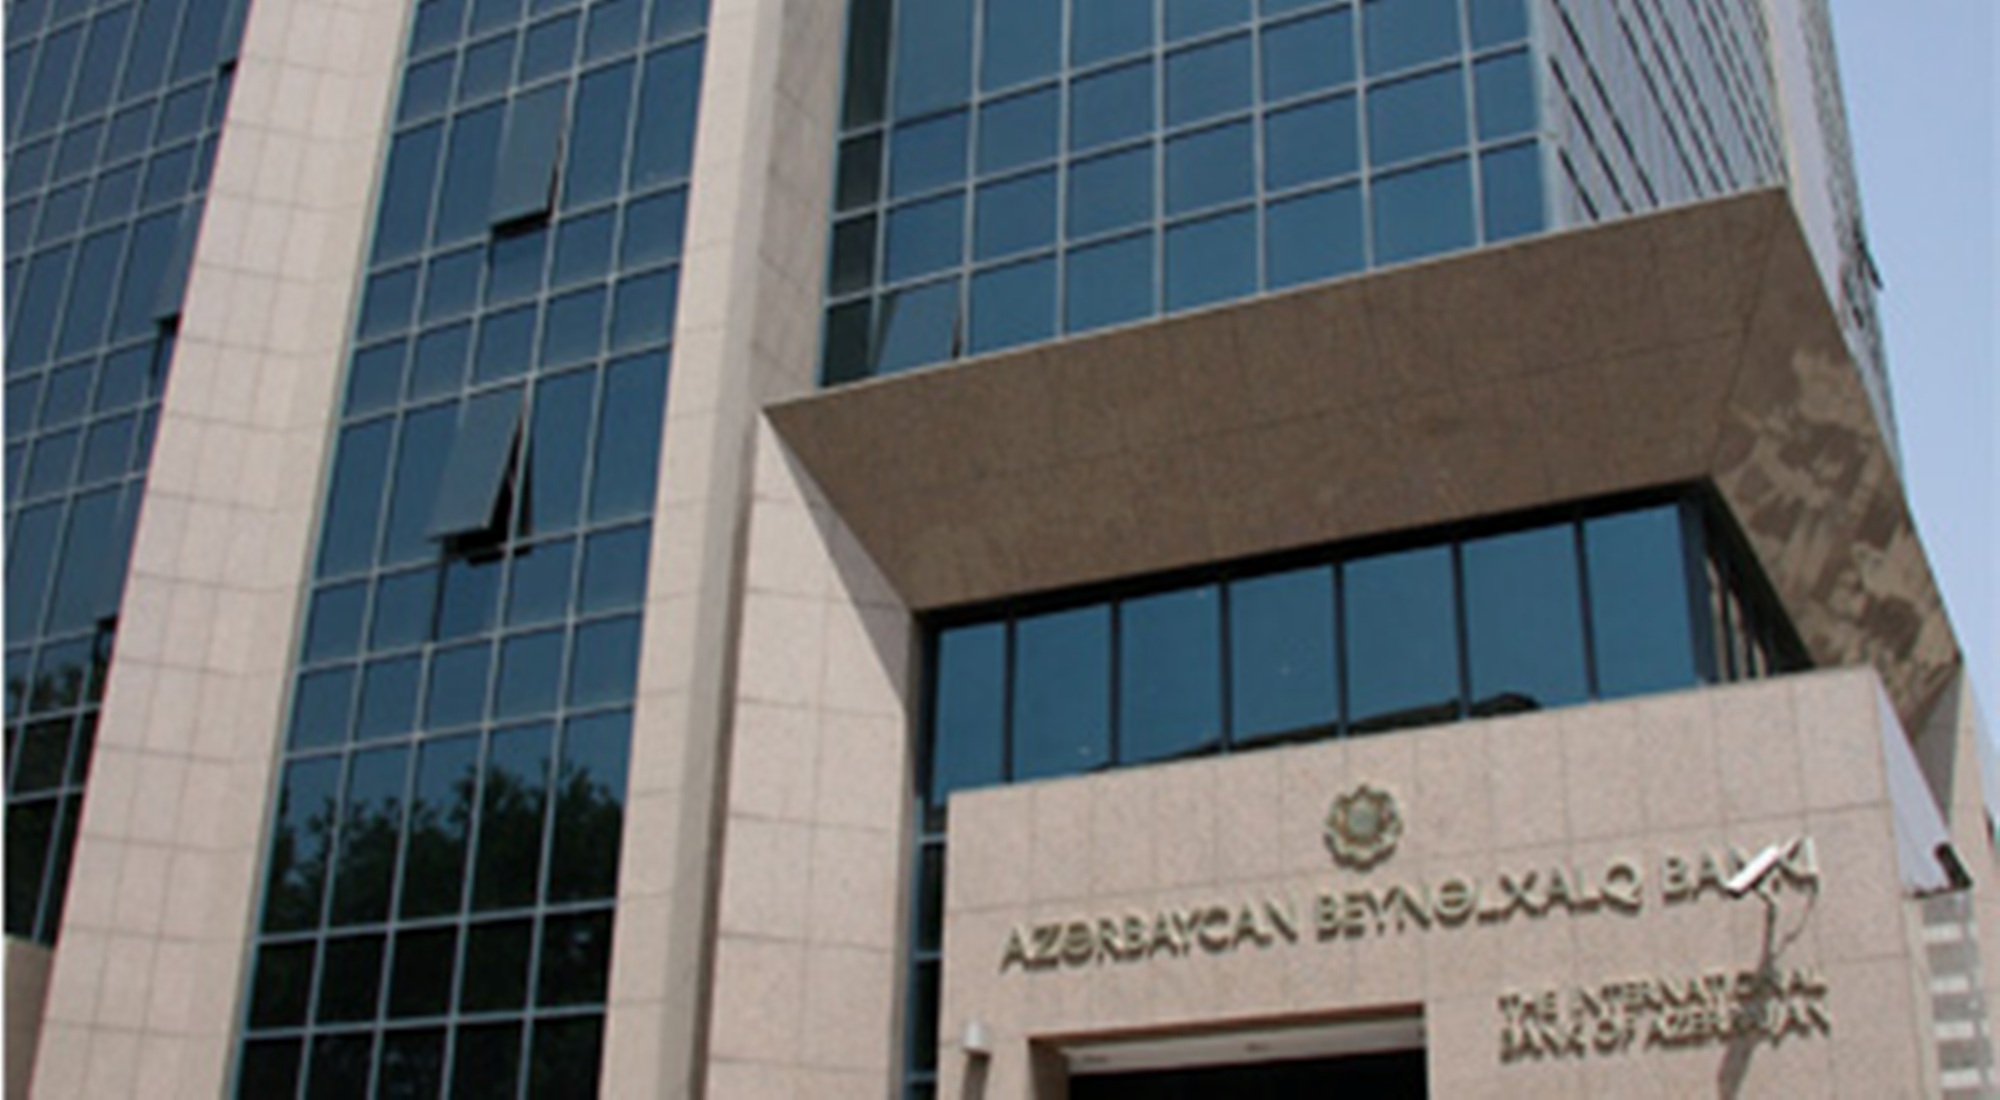 Azərbaycan Beynəlxalq Bankı satılır